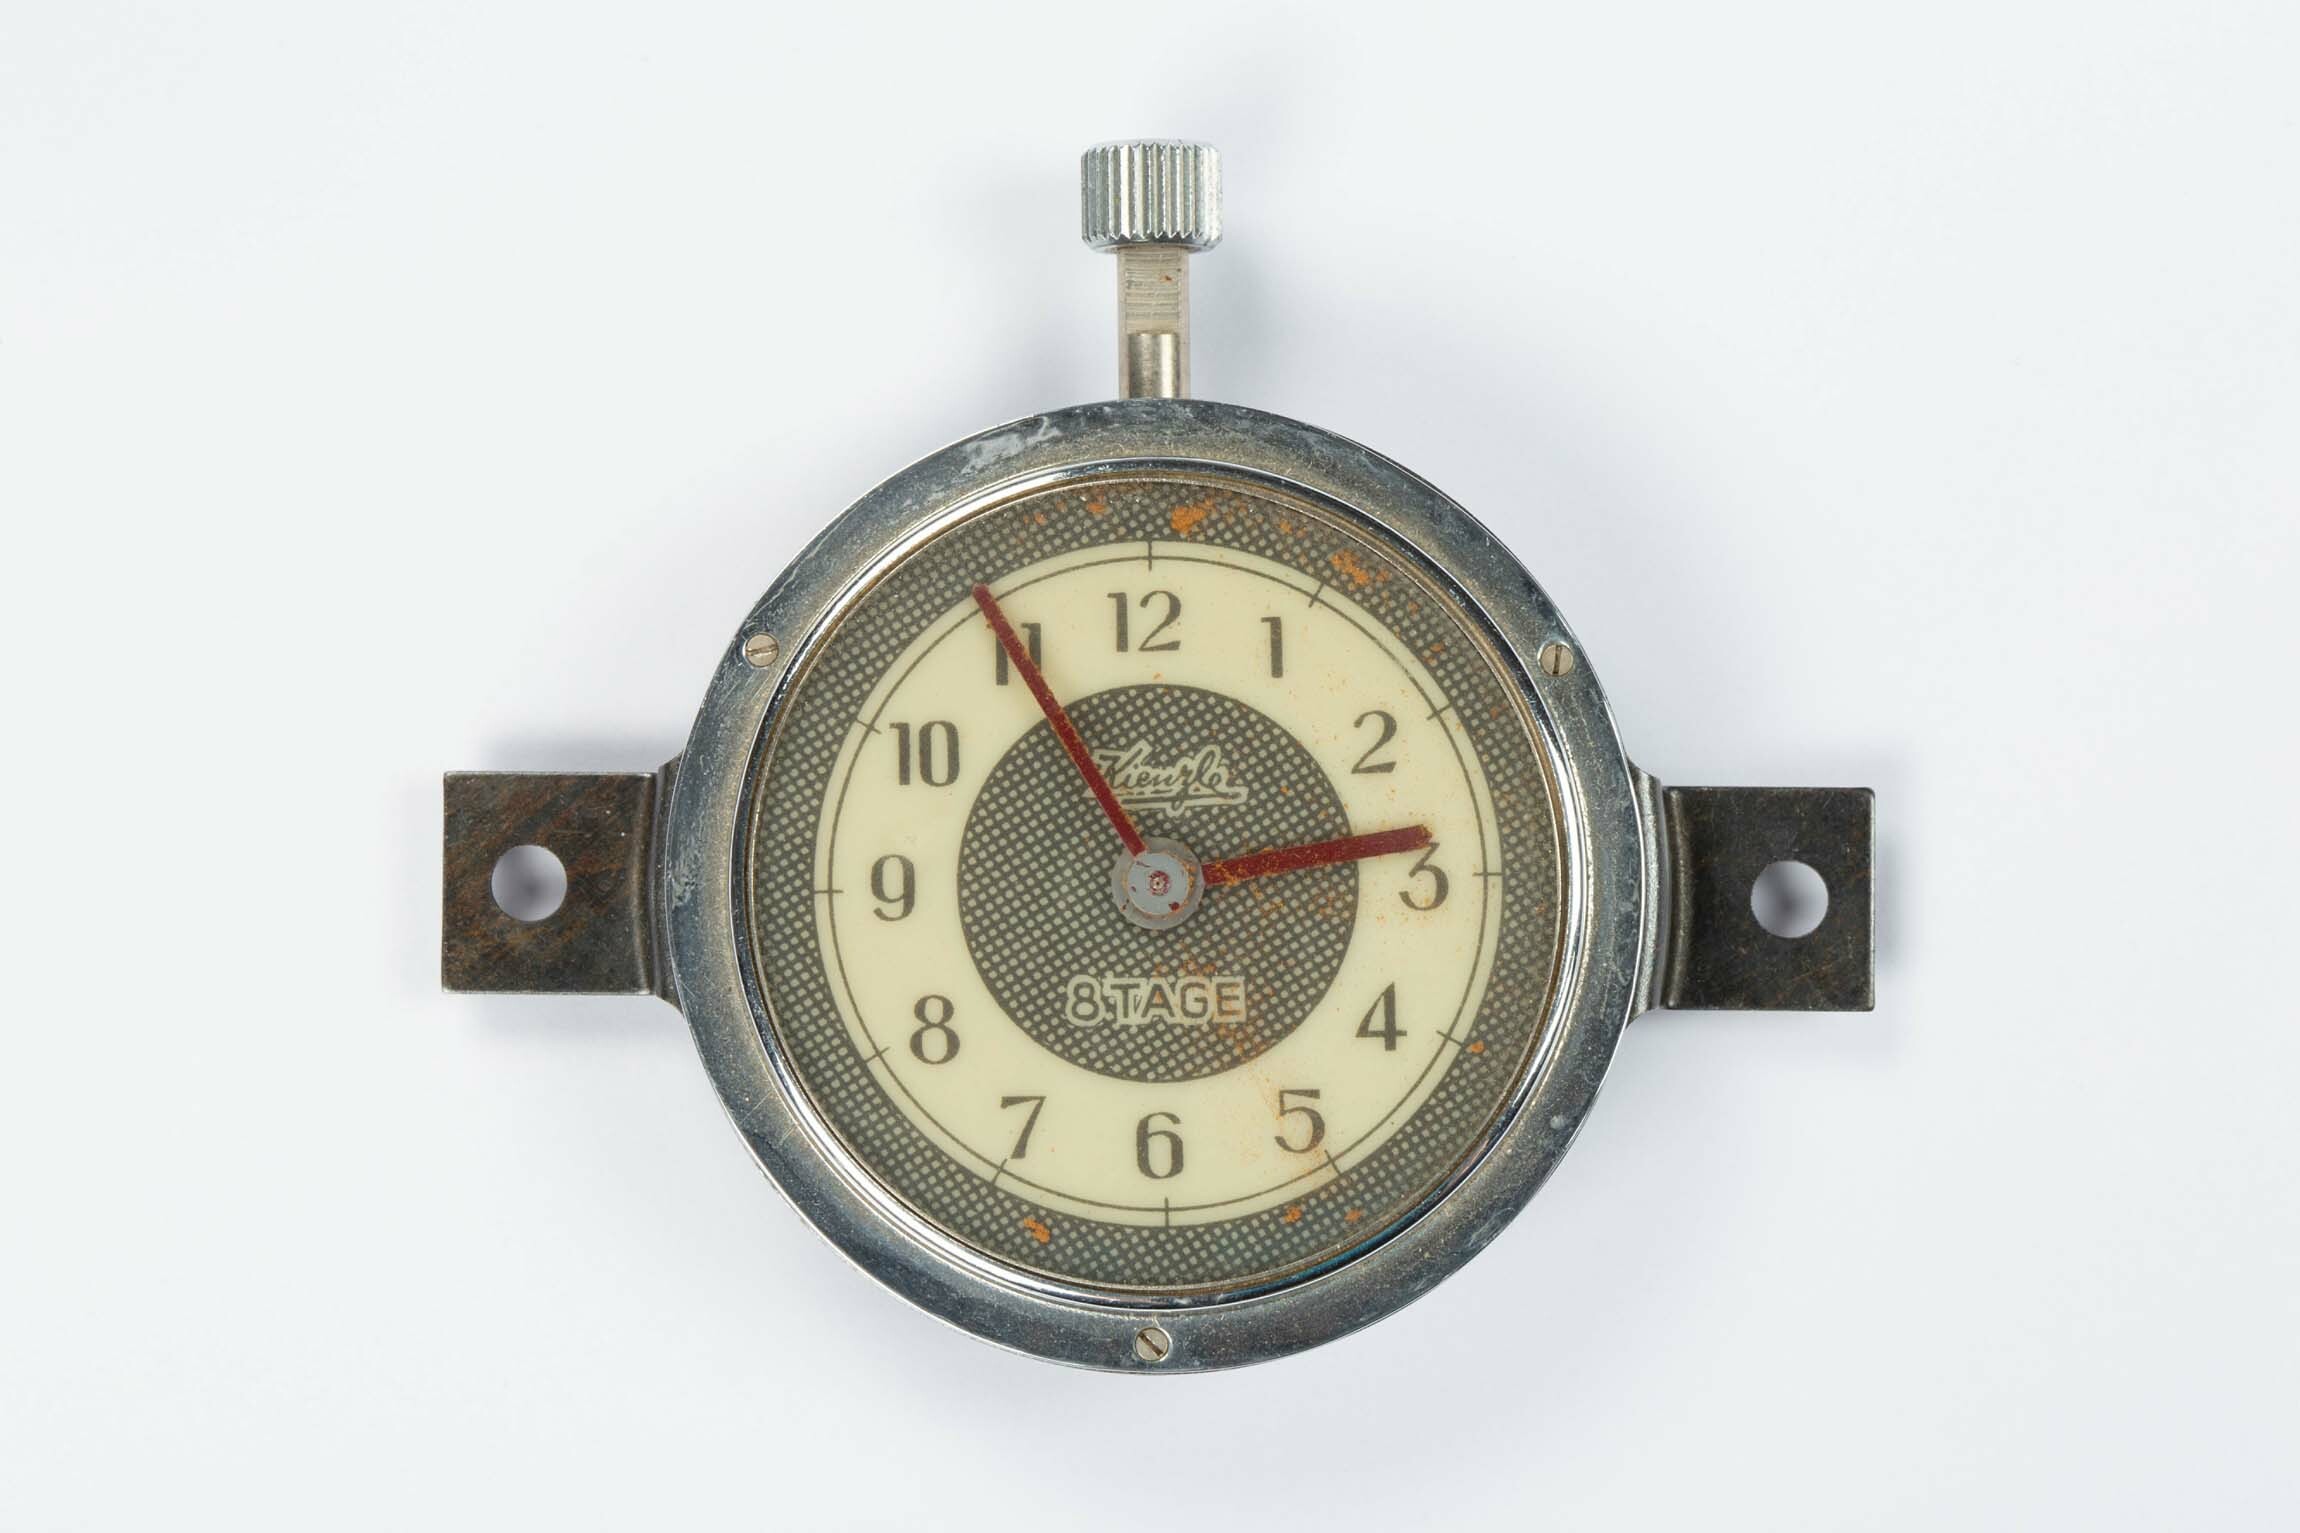 Autouhr, Kienzle, Schwenningen, um 1950 (Deutsches Uhrenmuseum CC BY-SA)